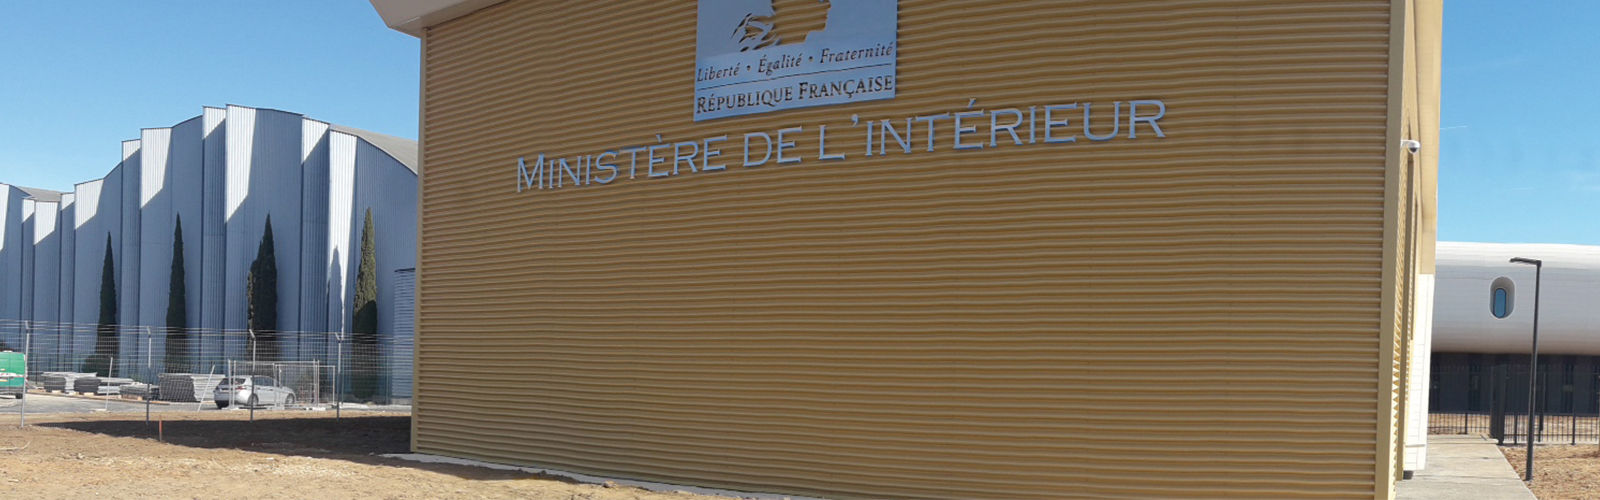 フランス内務省が民間警備トレーニングの規格化を開始 ケーススタディ